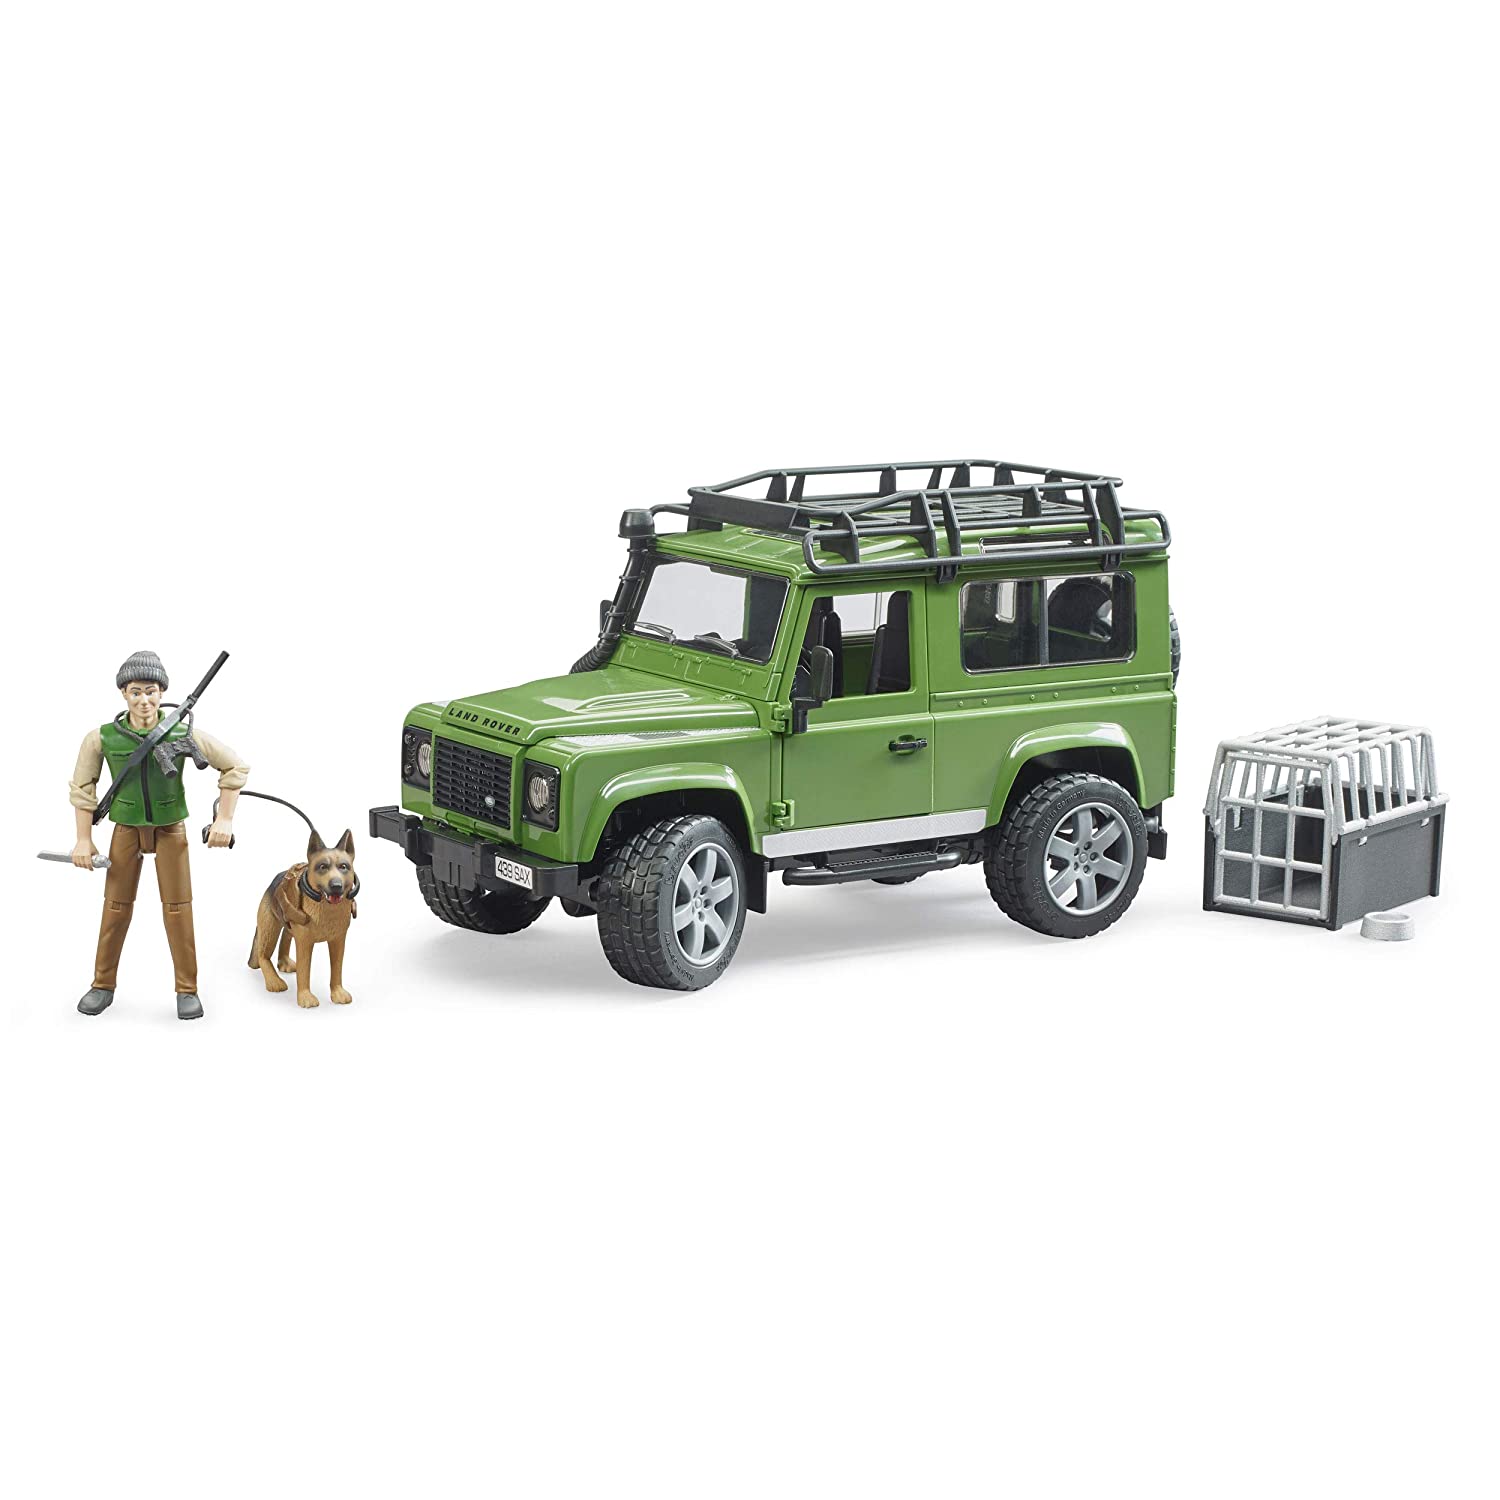 Merchandising Bruder: 2587 - Land Rover Defender Station Wagon Con Forestale E Cane NUOVO SIGILLATO, EDIZIONE DEL 05/03/2020 SUBITO DISPONIBILE